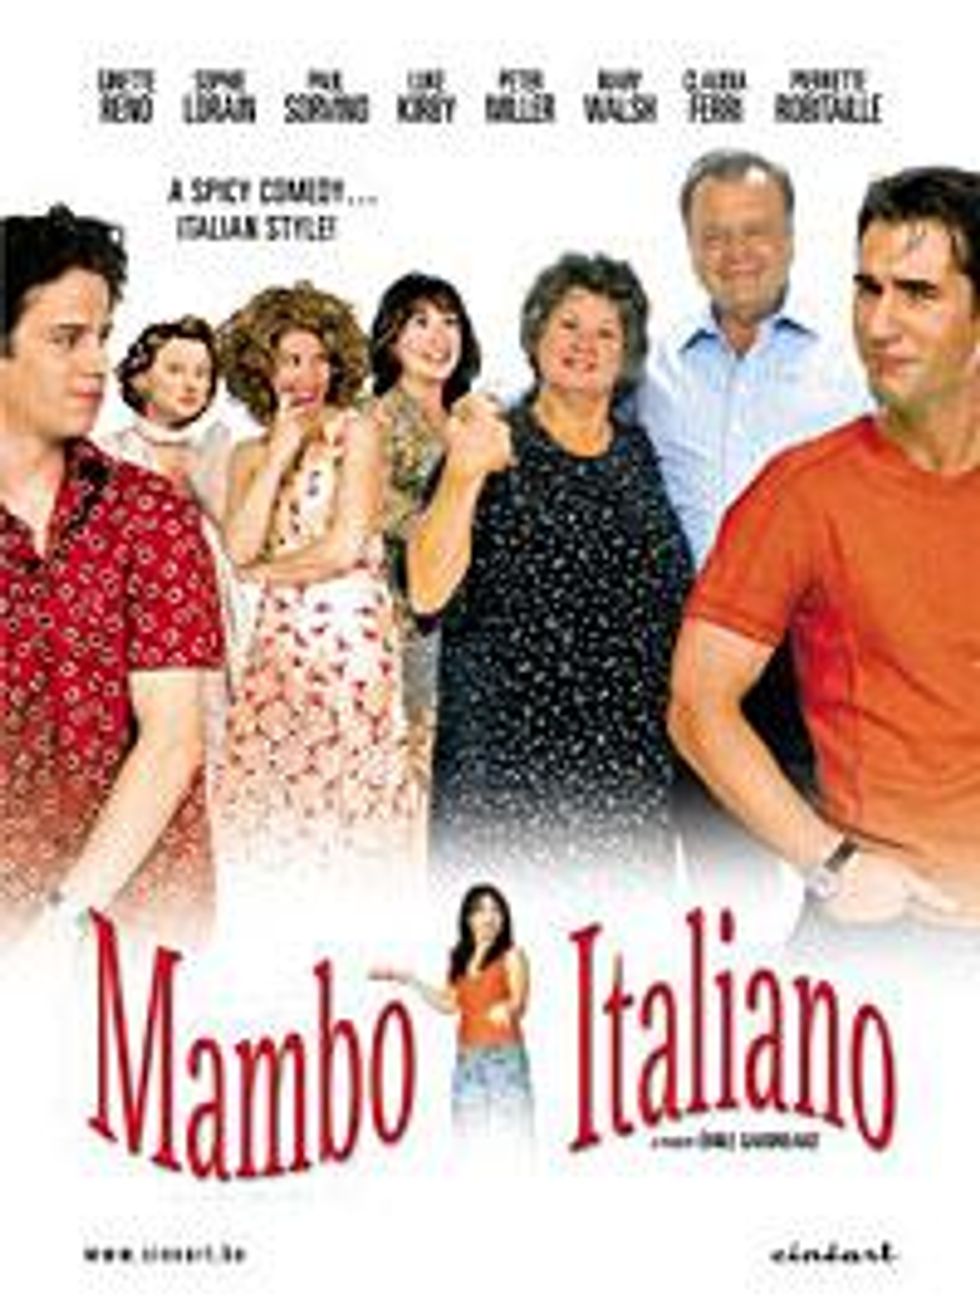 Mambo-italianox200_0